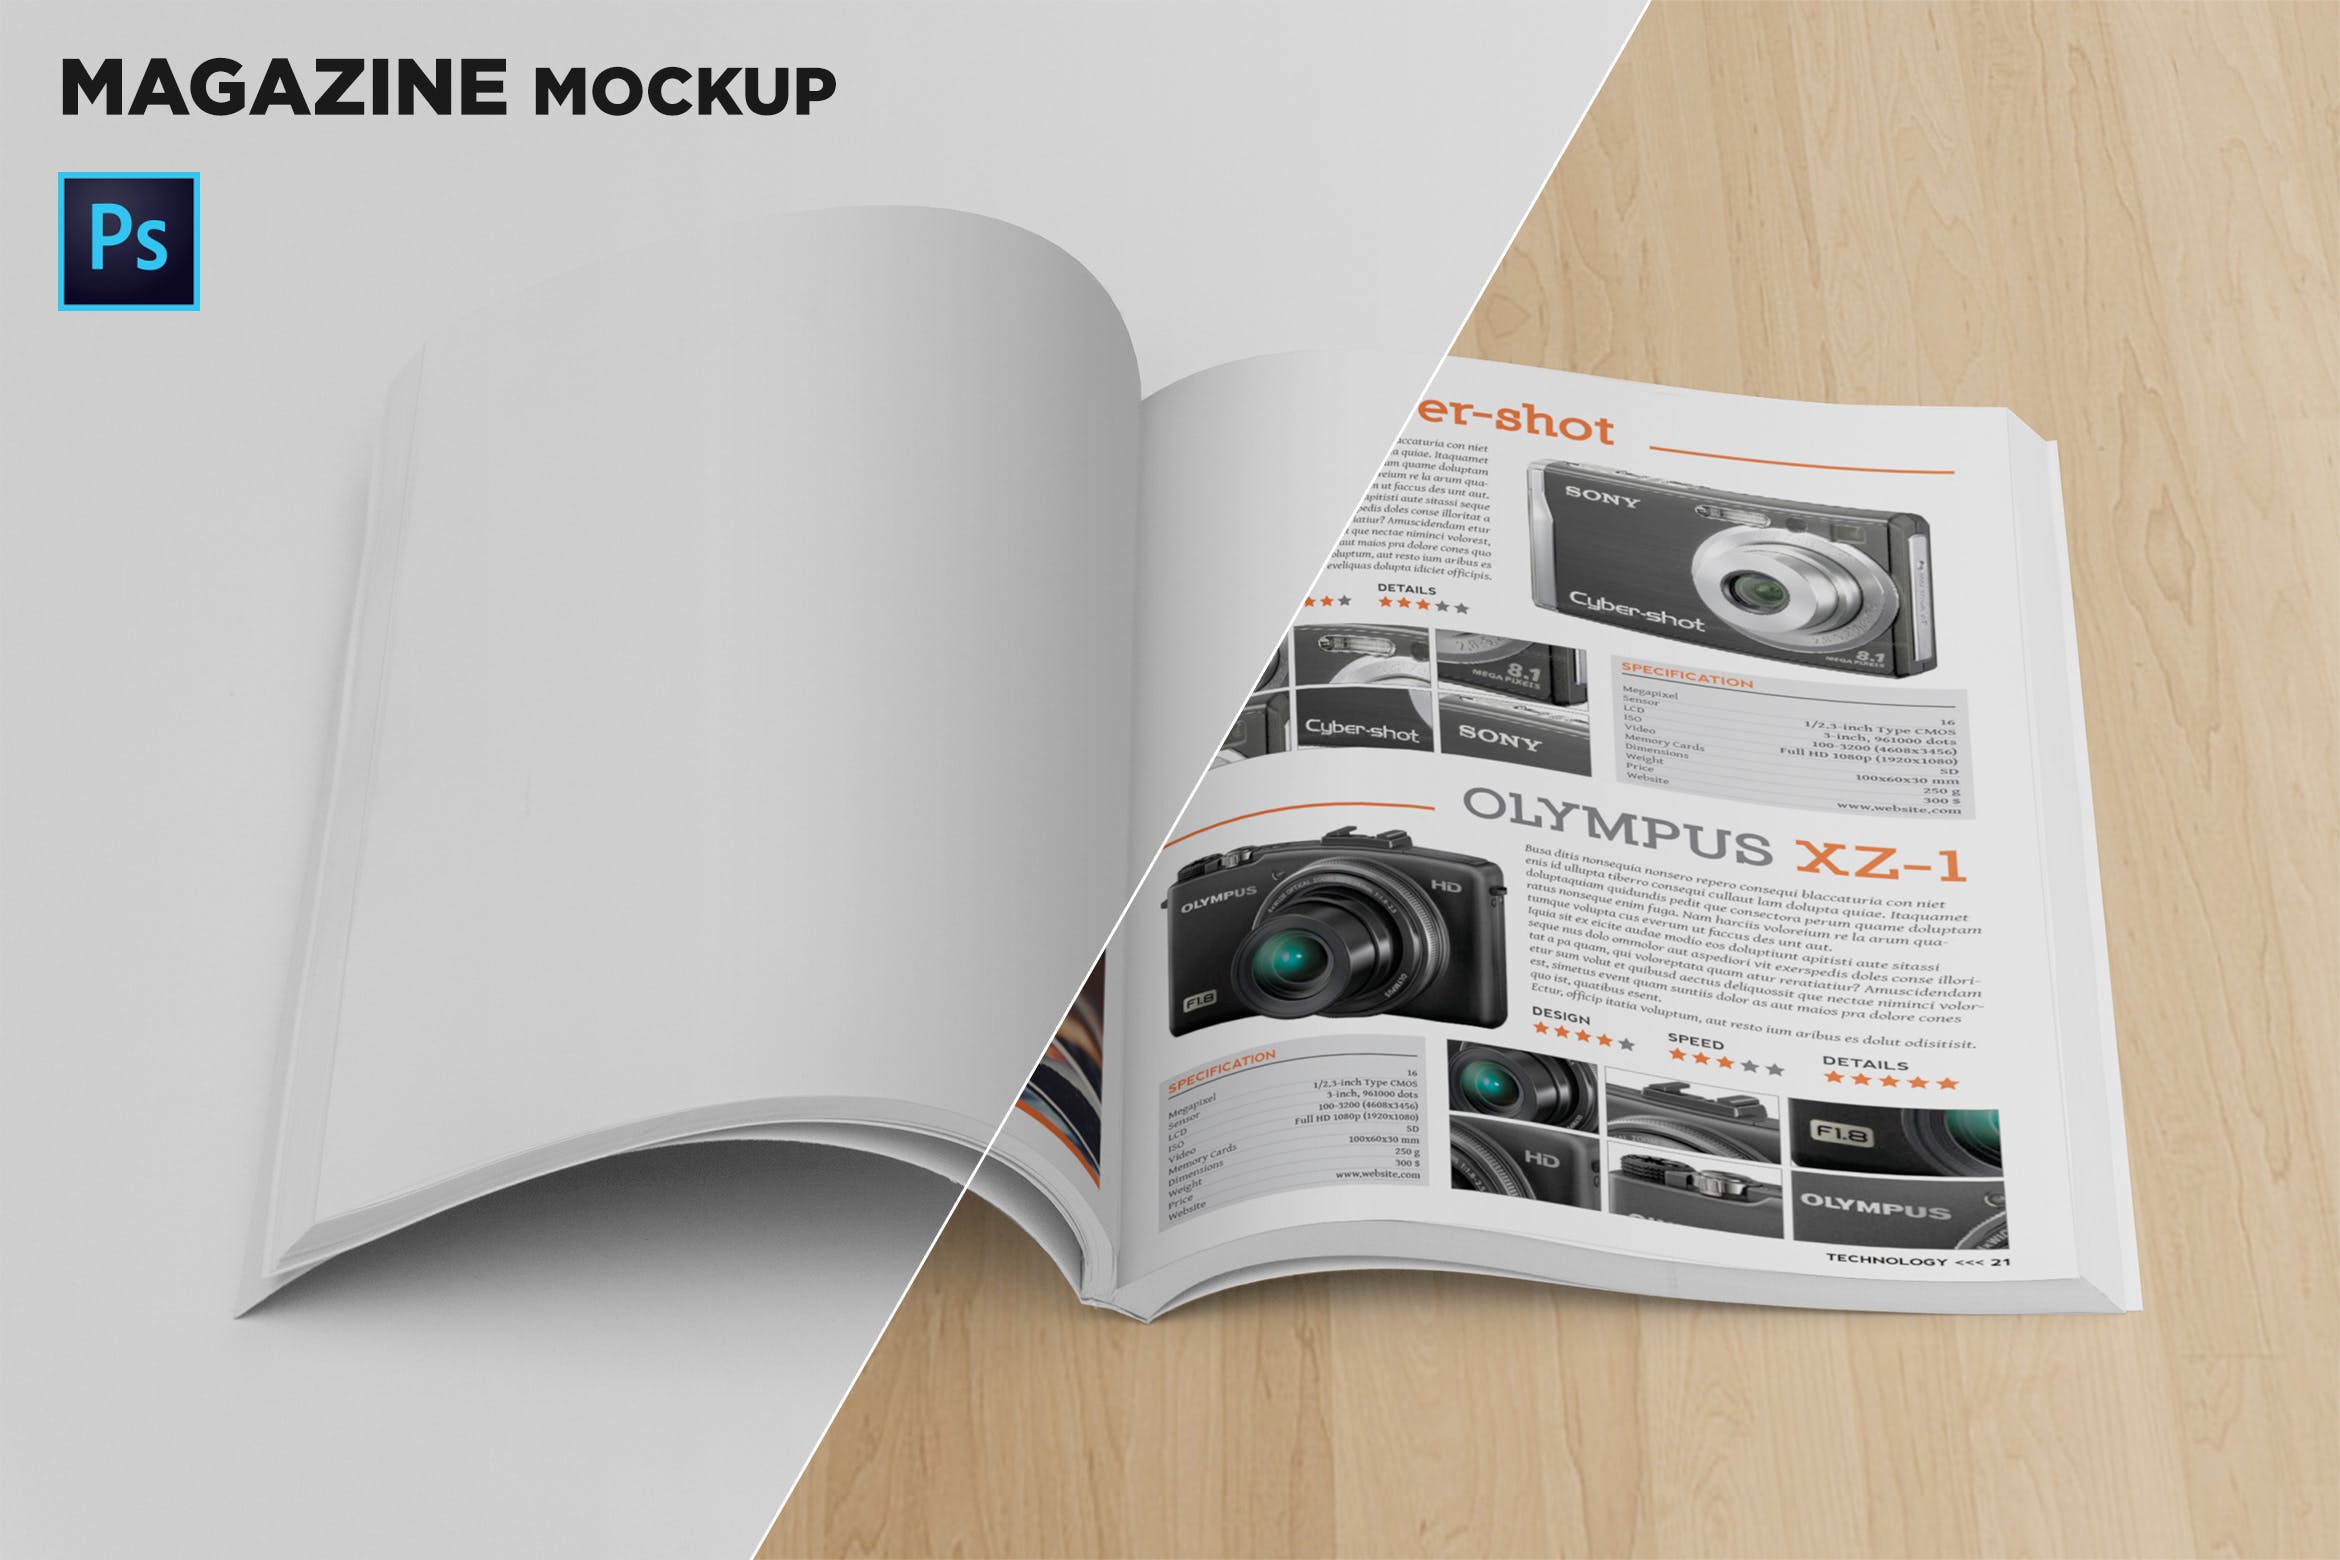 杂志内页排版设计前视图样机第一素材精选 Magazine Mockup Front View插图